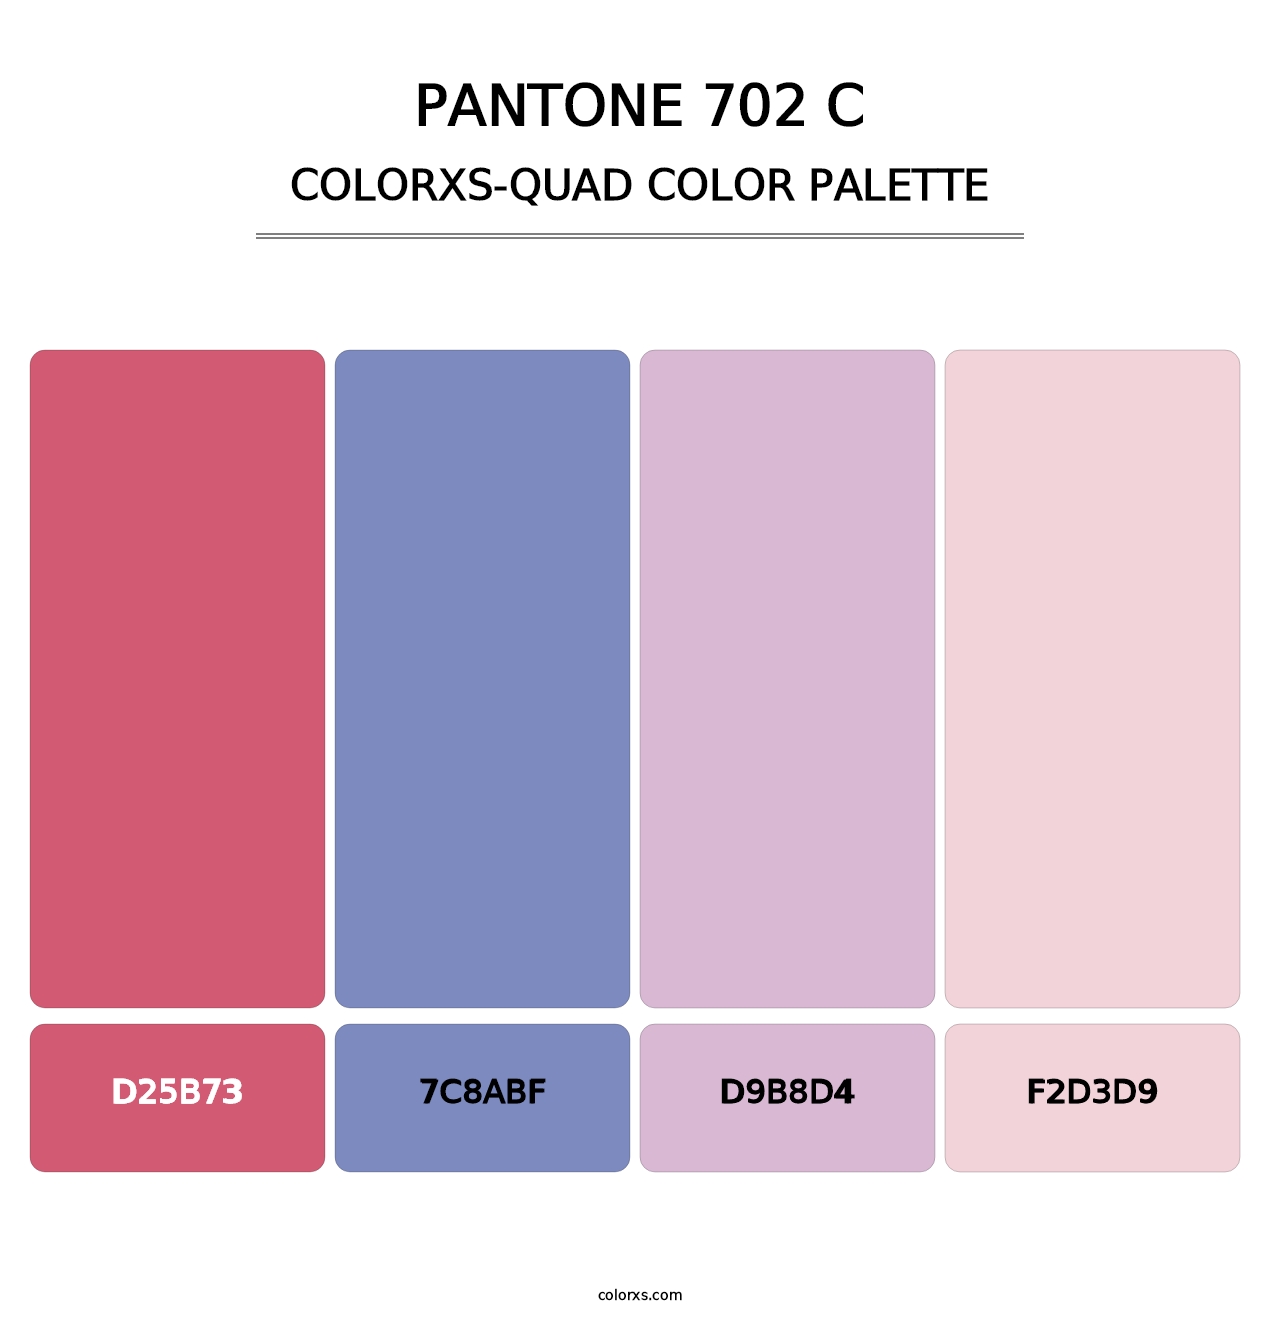 PANTONE 702 C - Colorxs Quad Palette